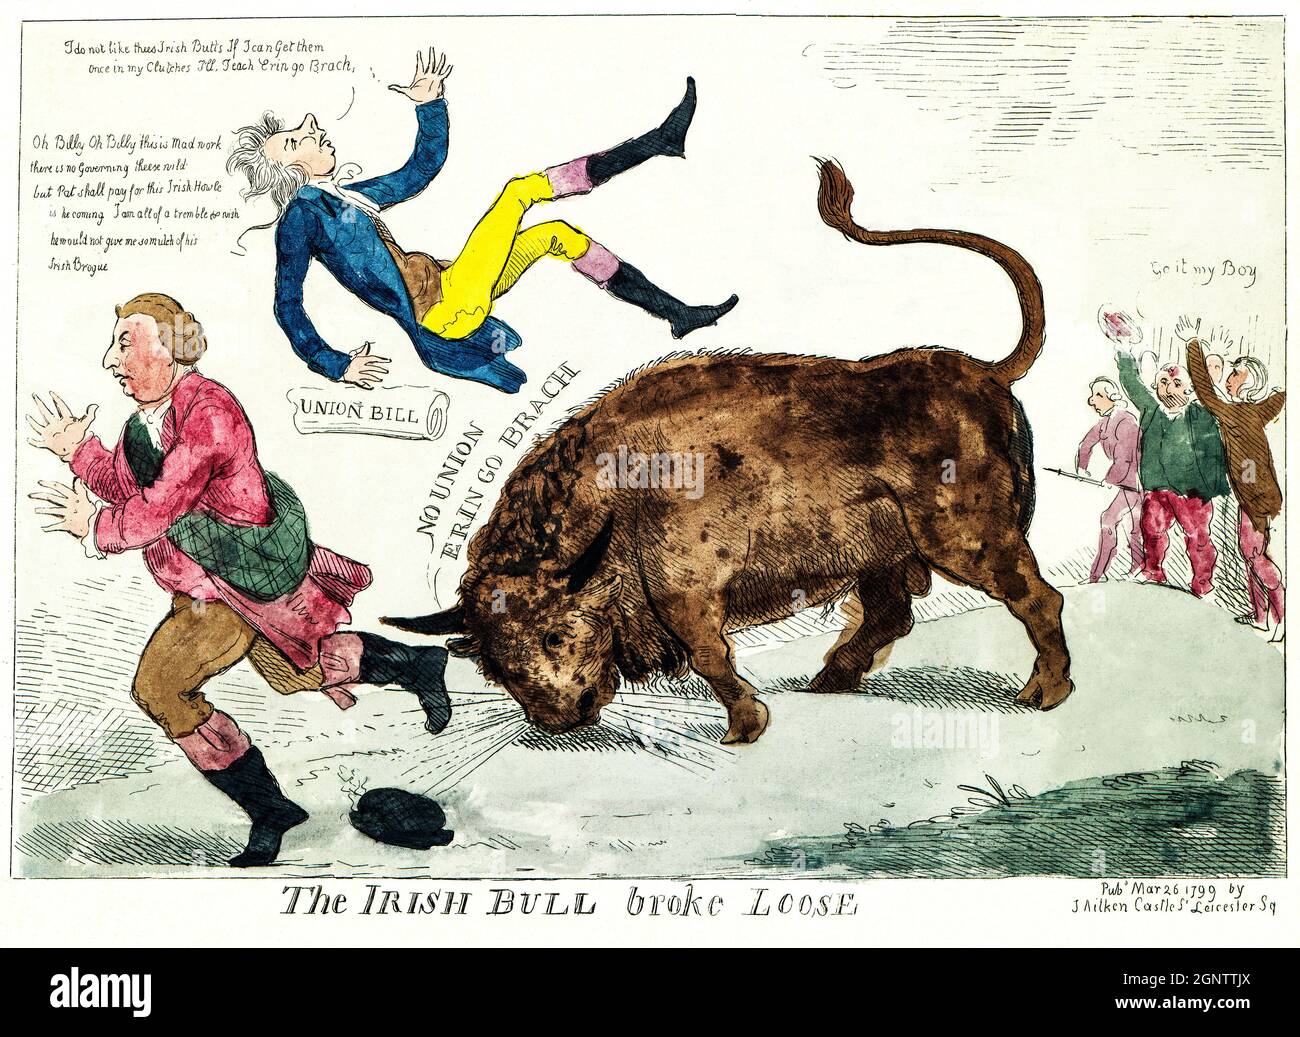 Ein Cartoon aus dem 19. Jahrhundert über die irische Union, in dem der 'Irish Bull' William Pitt in die Luft wirft und dabei ist, das gleiche mit Lord Dundas zu tun, der nach links läuft; ganz rechts jubeln diejenigen, die gegen Pitt's 'Union Bill' sind, dem Stier zu: 'Go it my Boy'. Stockfoto